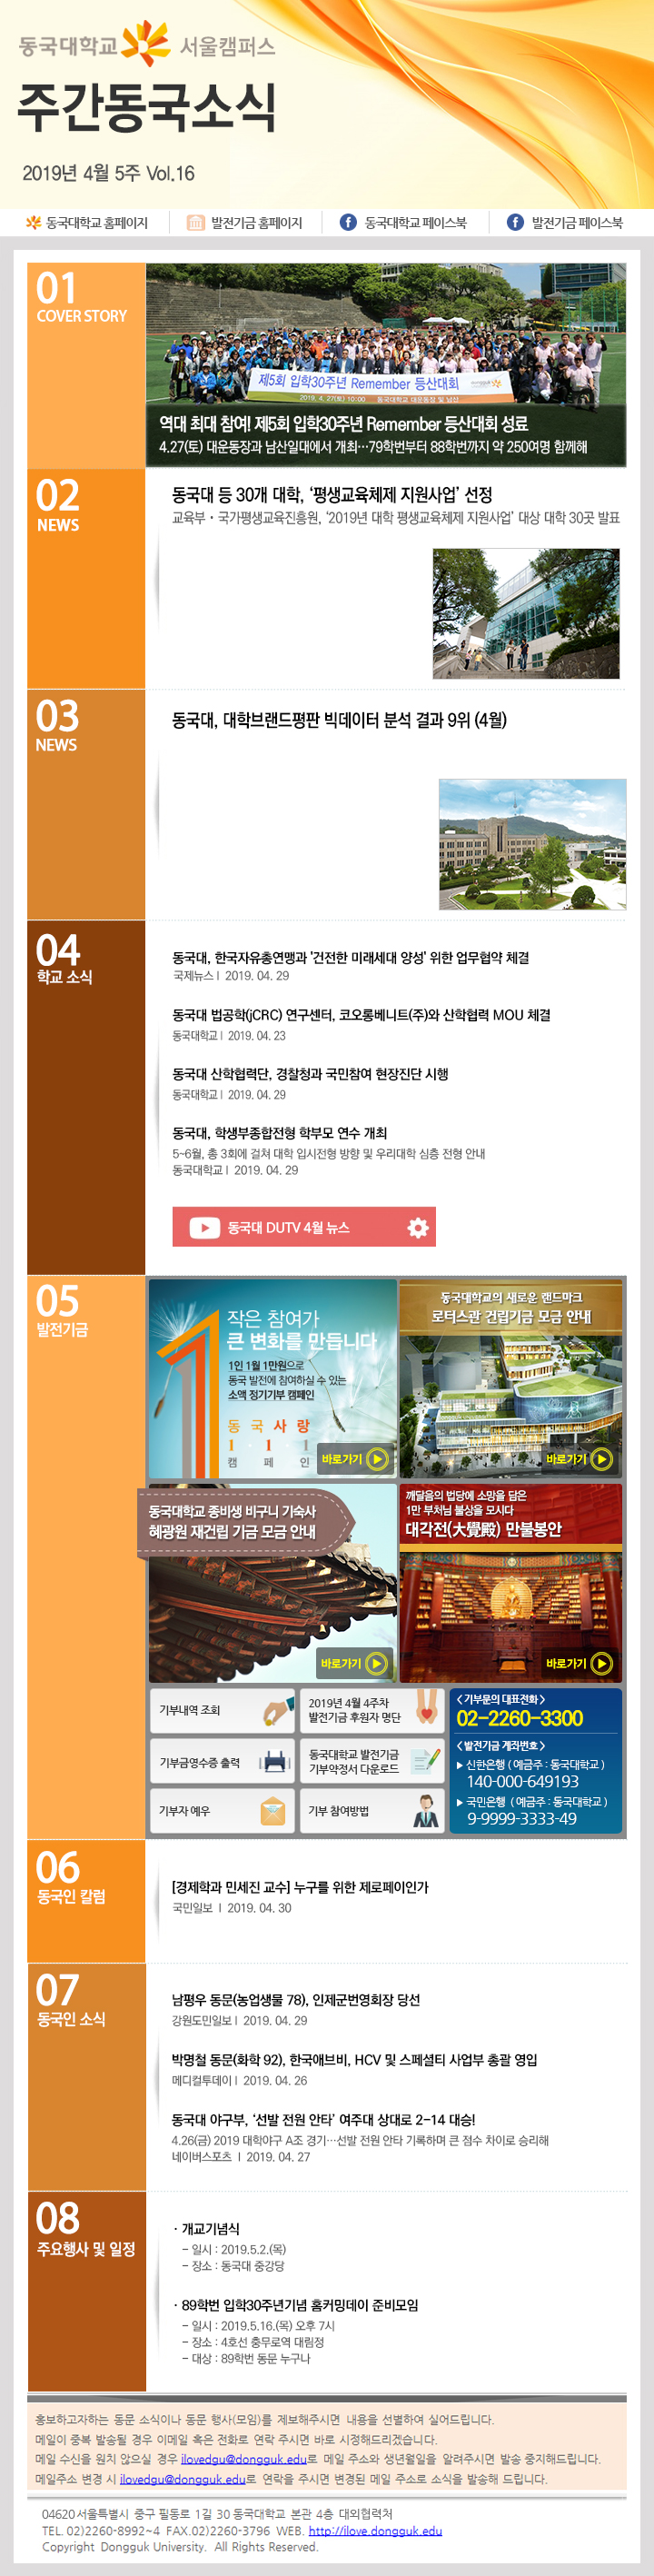 동국웹진 2019년 4월 5주 - 자세한 내용은 첨부파일로 확인하세요.